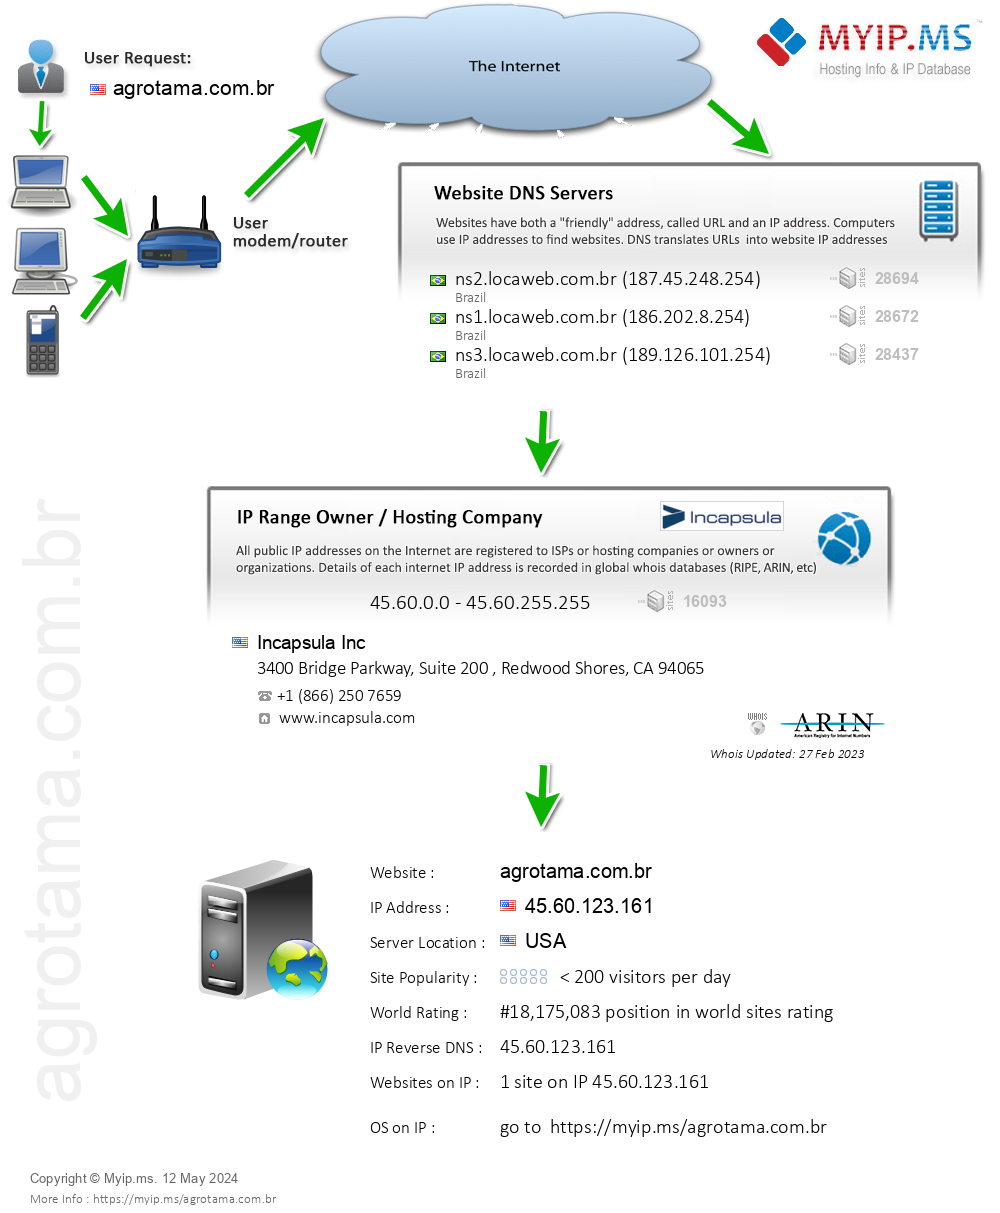 Agrotama.com.br - Website Hosting Visual IP Diagram